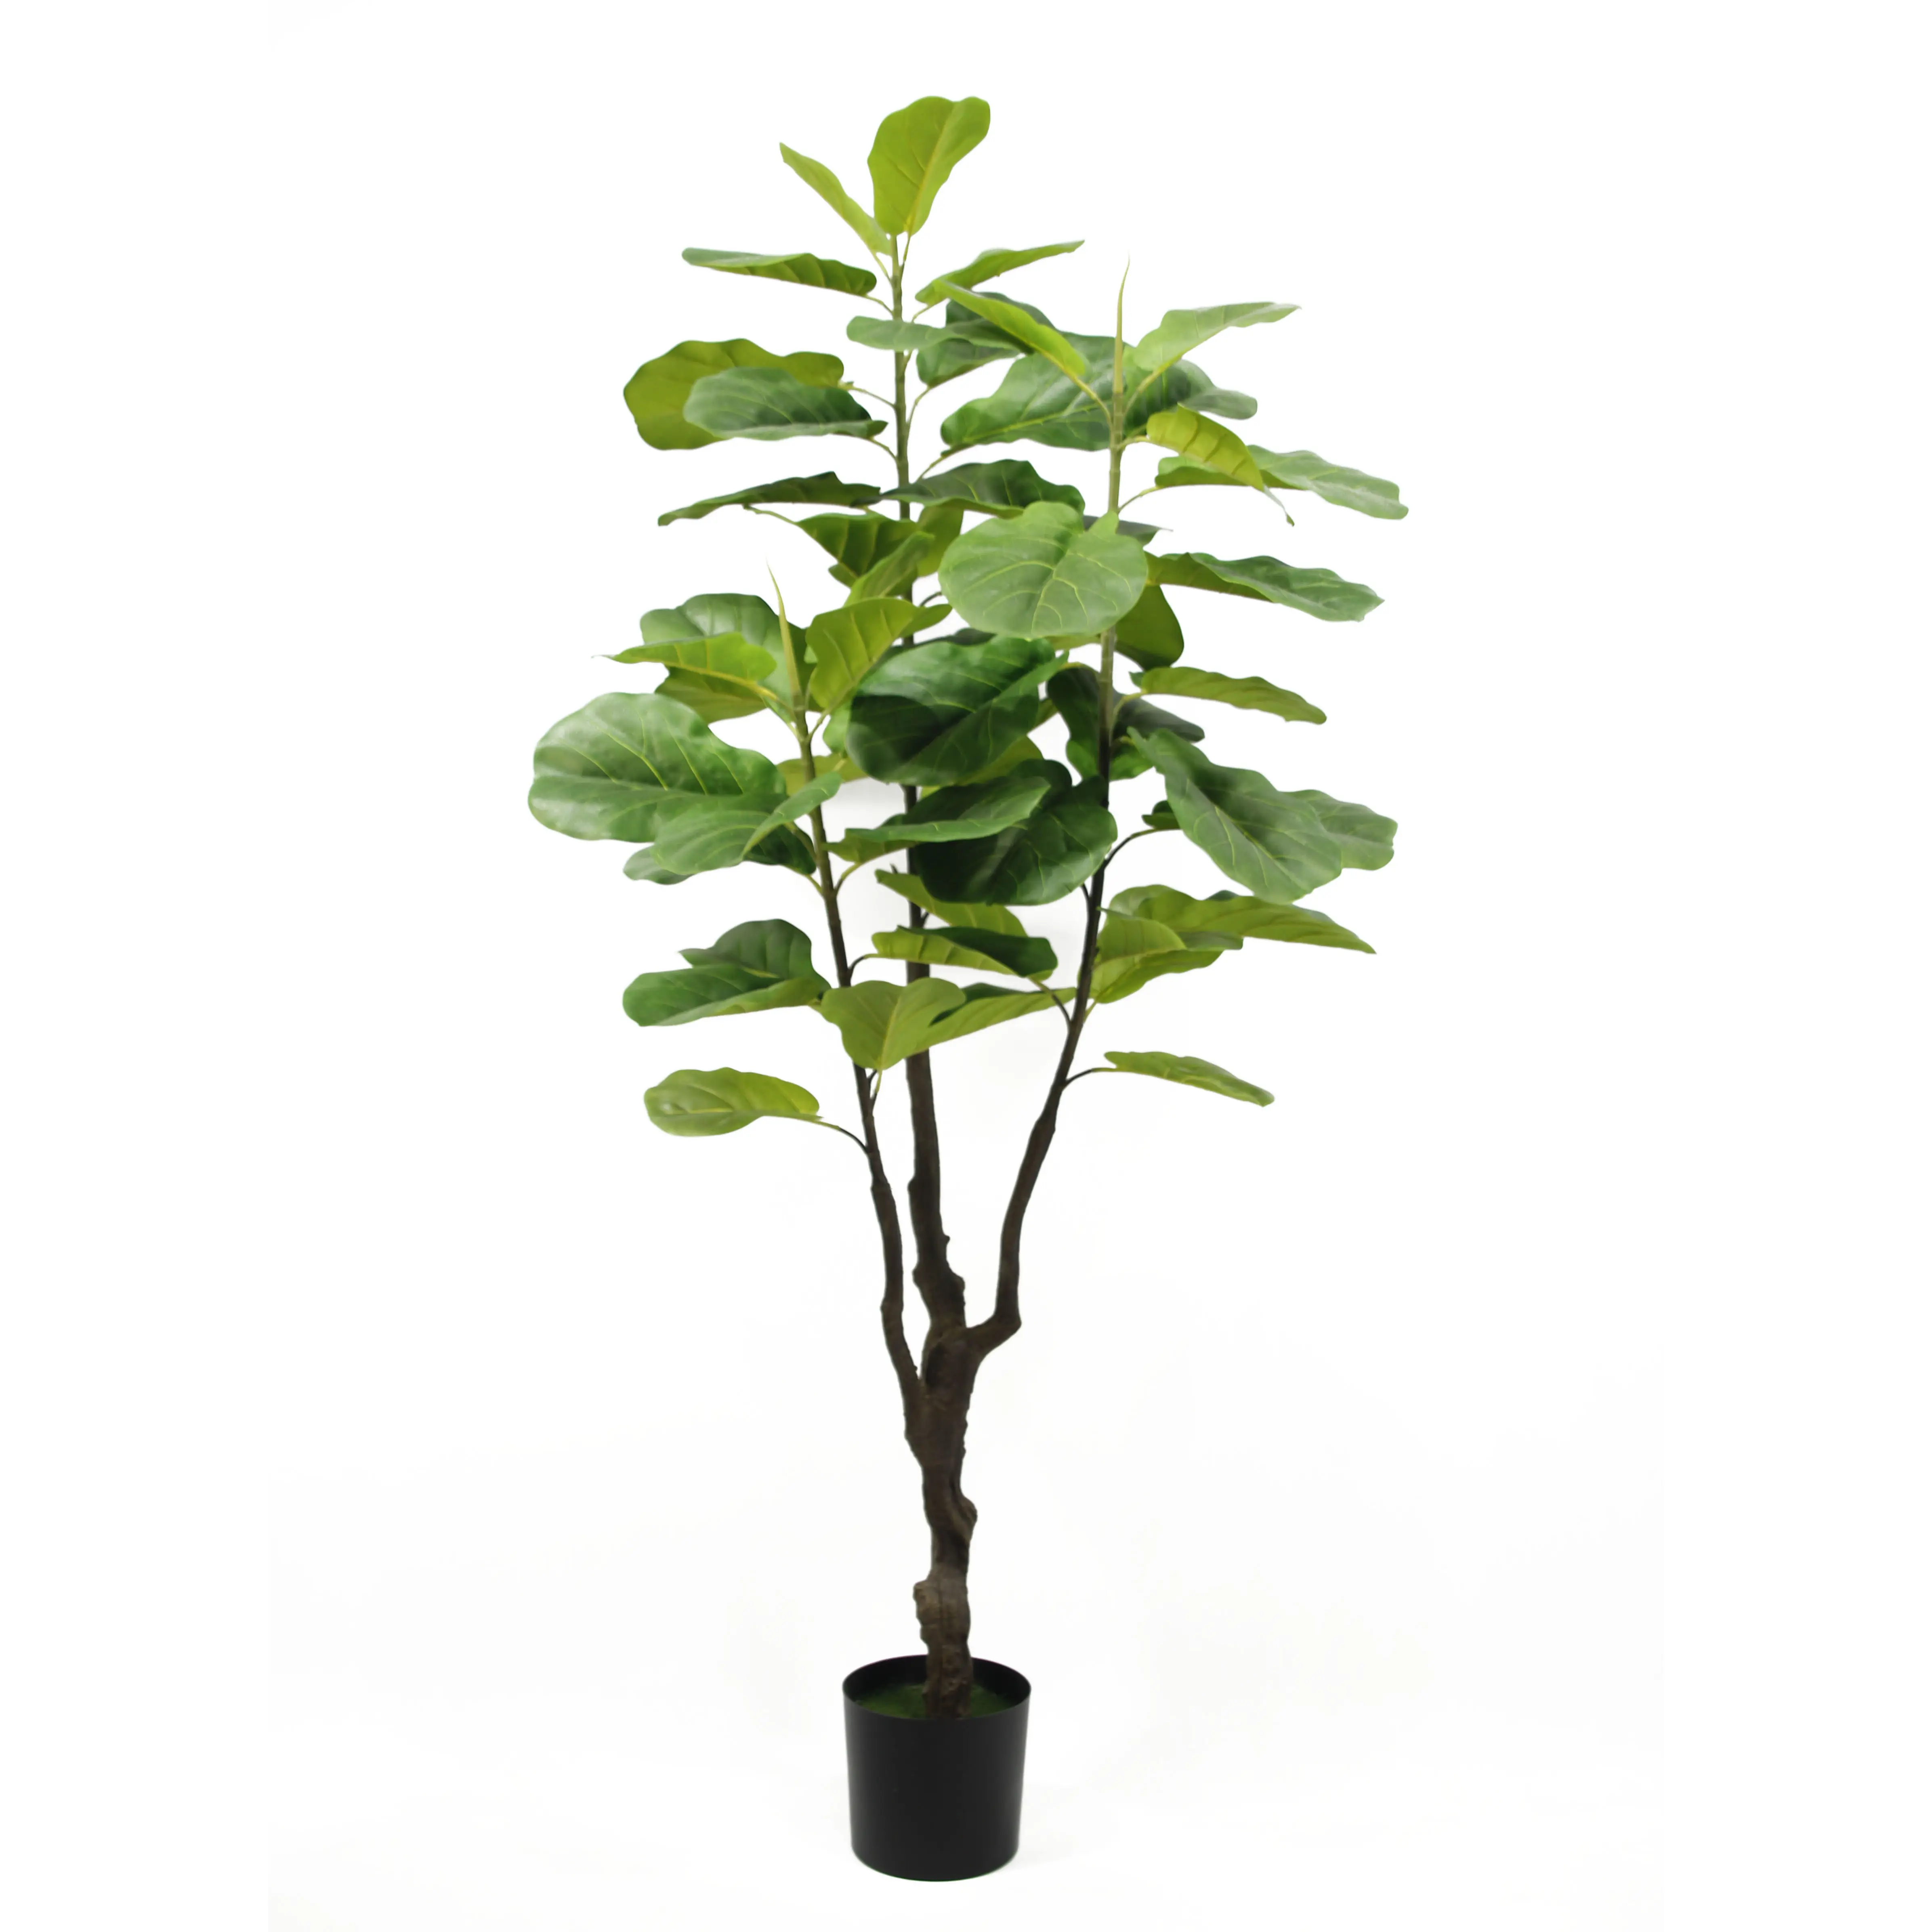 شجرة شجر اصطناعي, شجرة شجر اصطناعي مُخصصة داخل وعاء من النباتات الصناعية للاستخدام الداخلي والخارجي والمنزل والمكتب